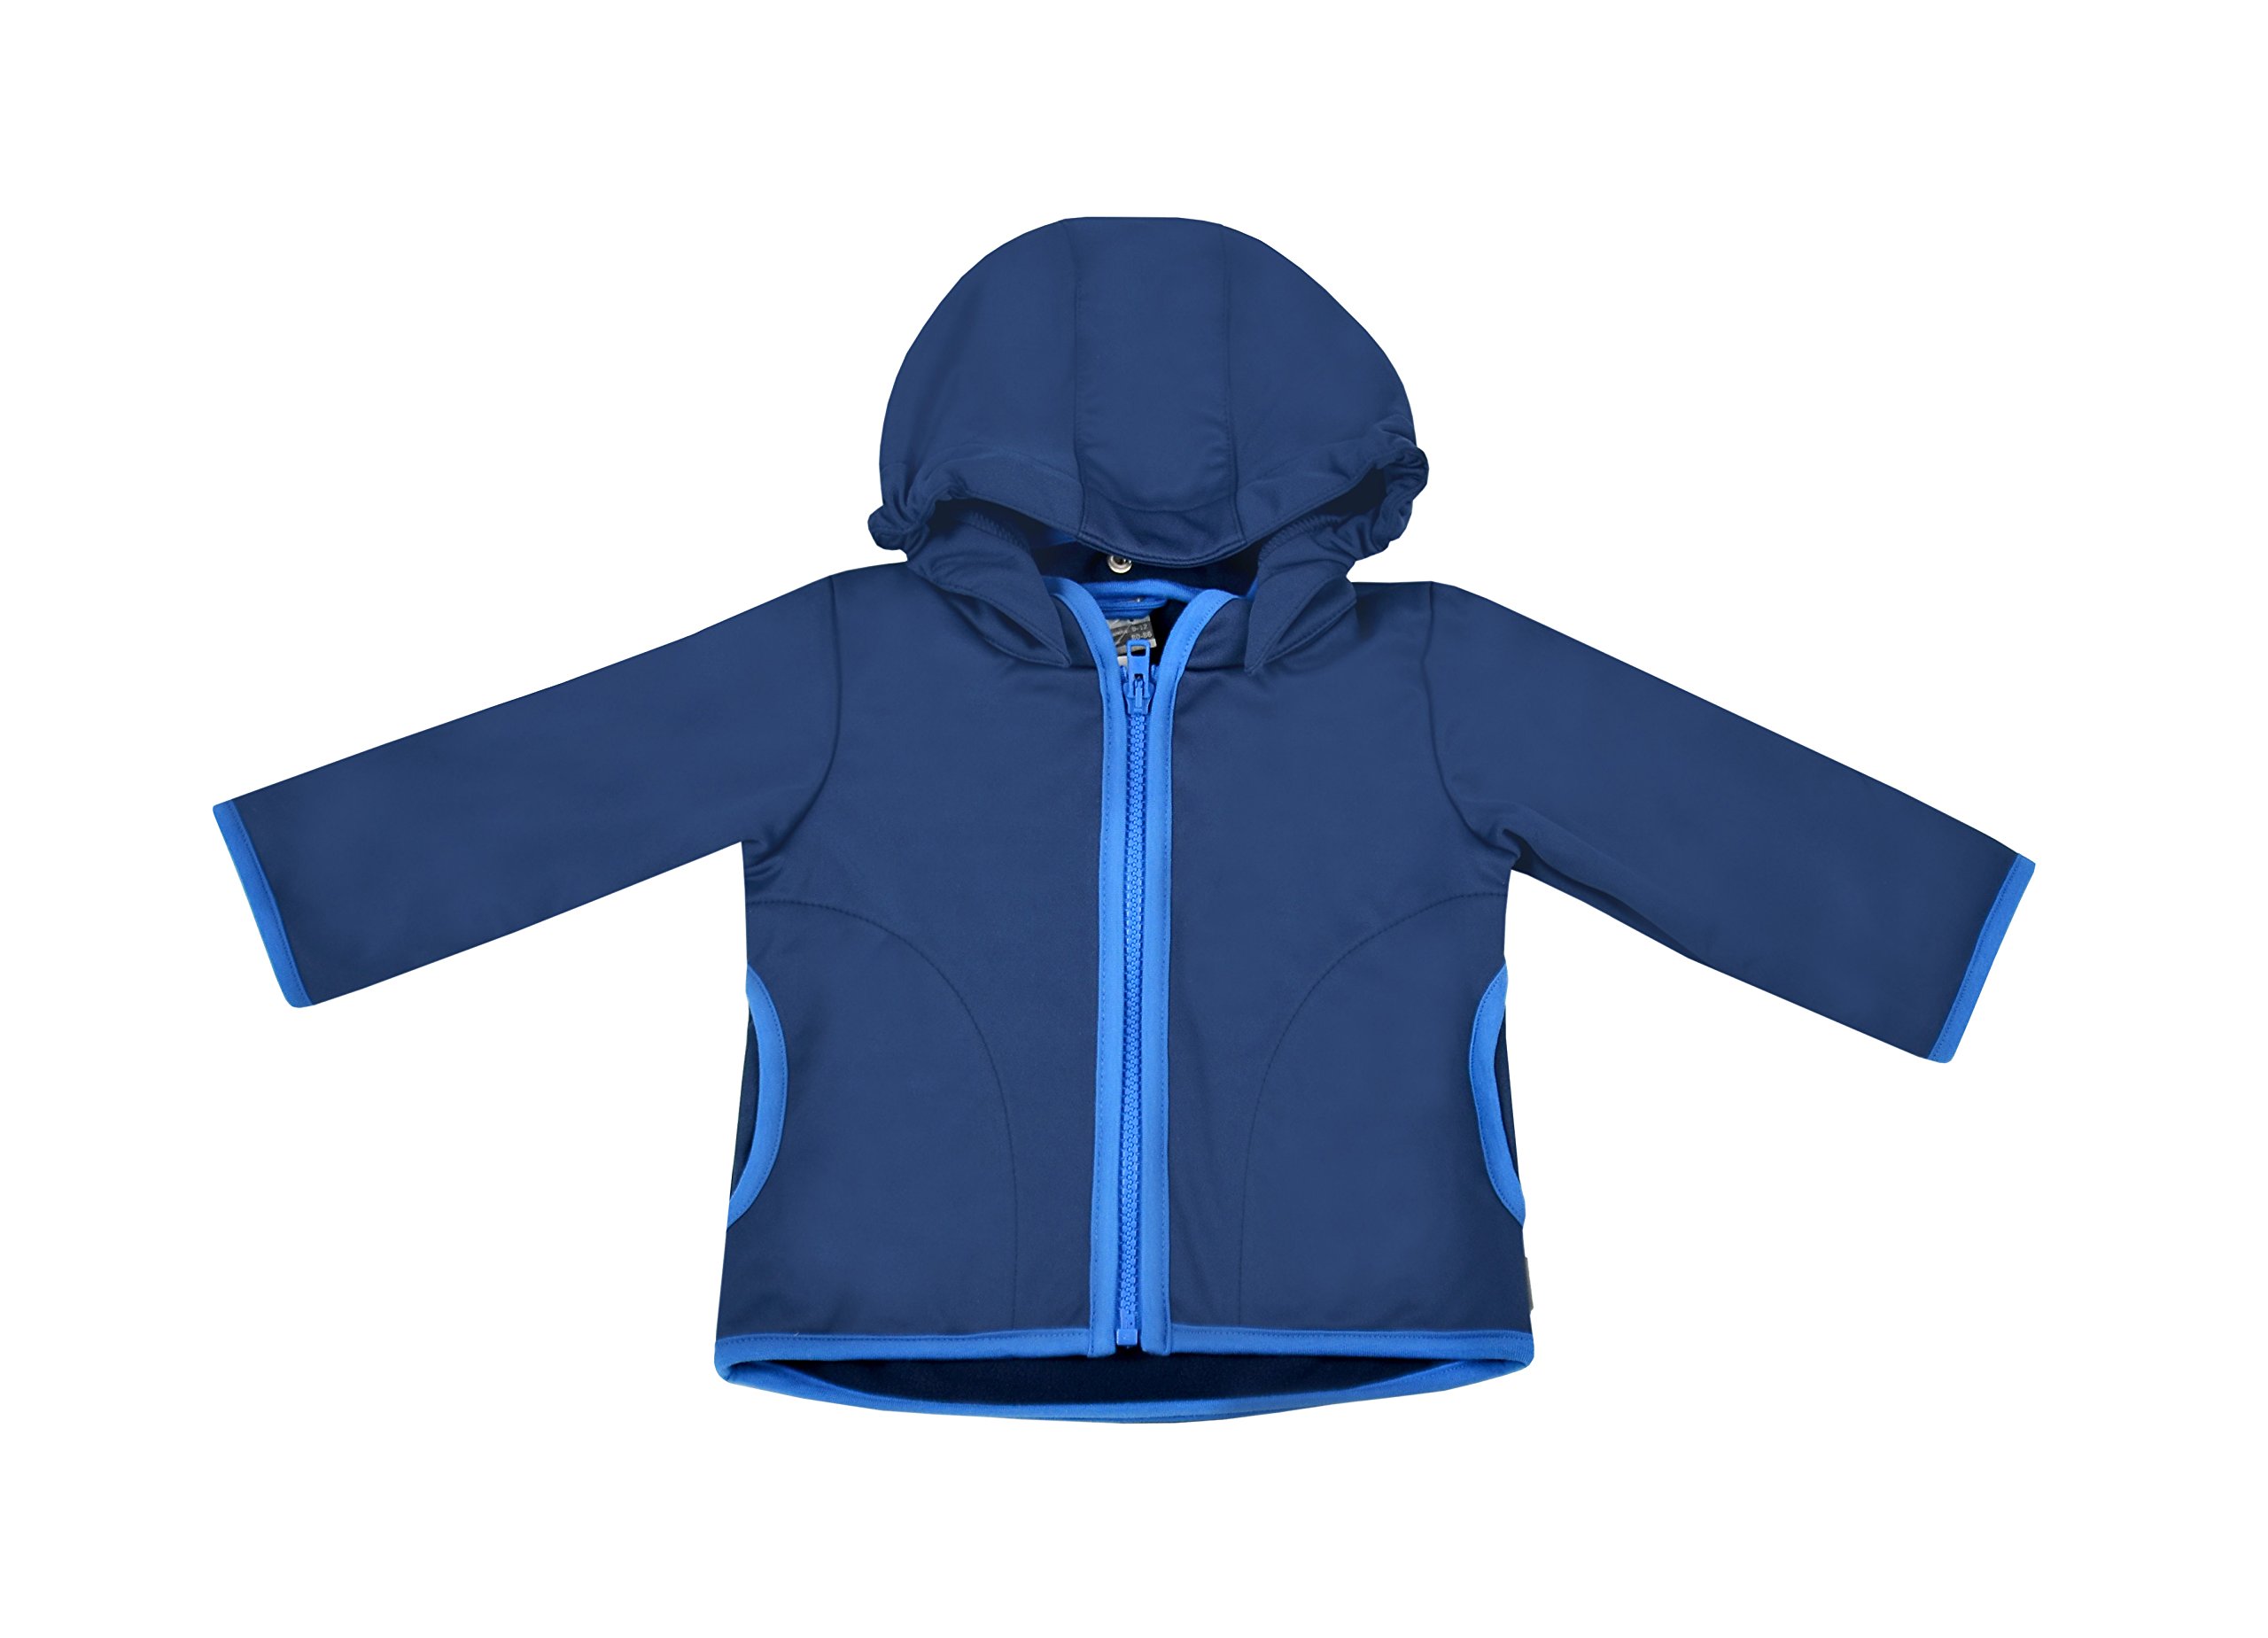 be! Baby/Kinder Softshell Jacke mit Leichter Fleece-Schicht innen, Wassersäule: 10.000 mm, Gr. 92/98, dunkelblau